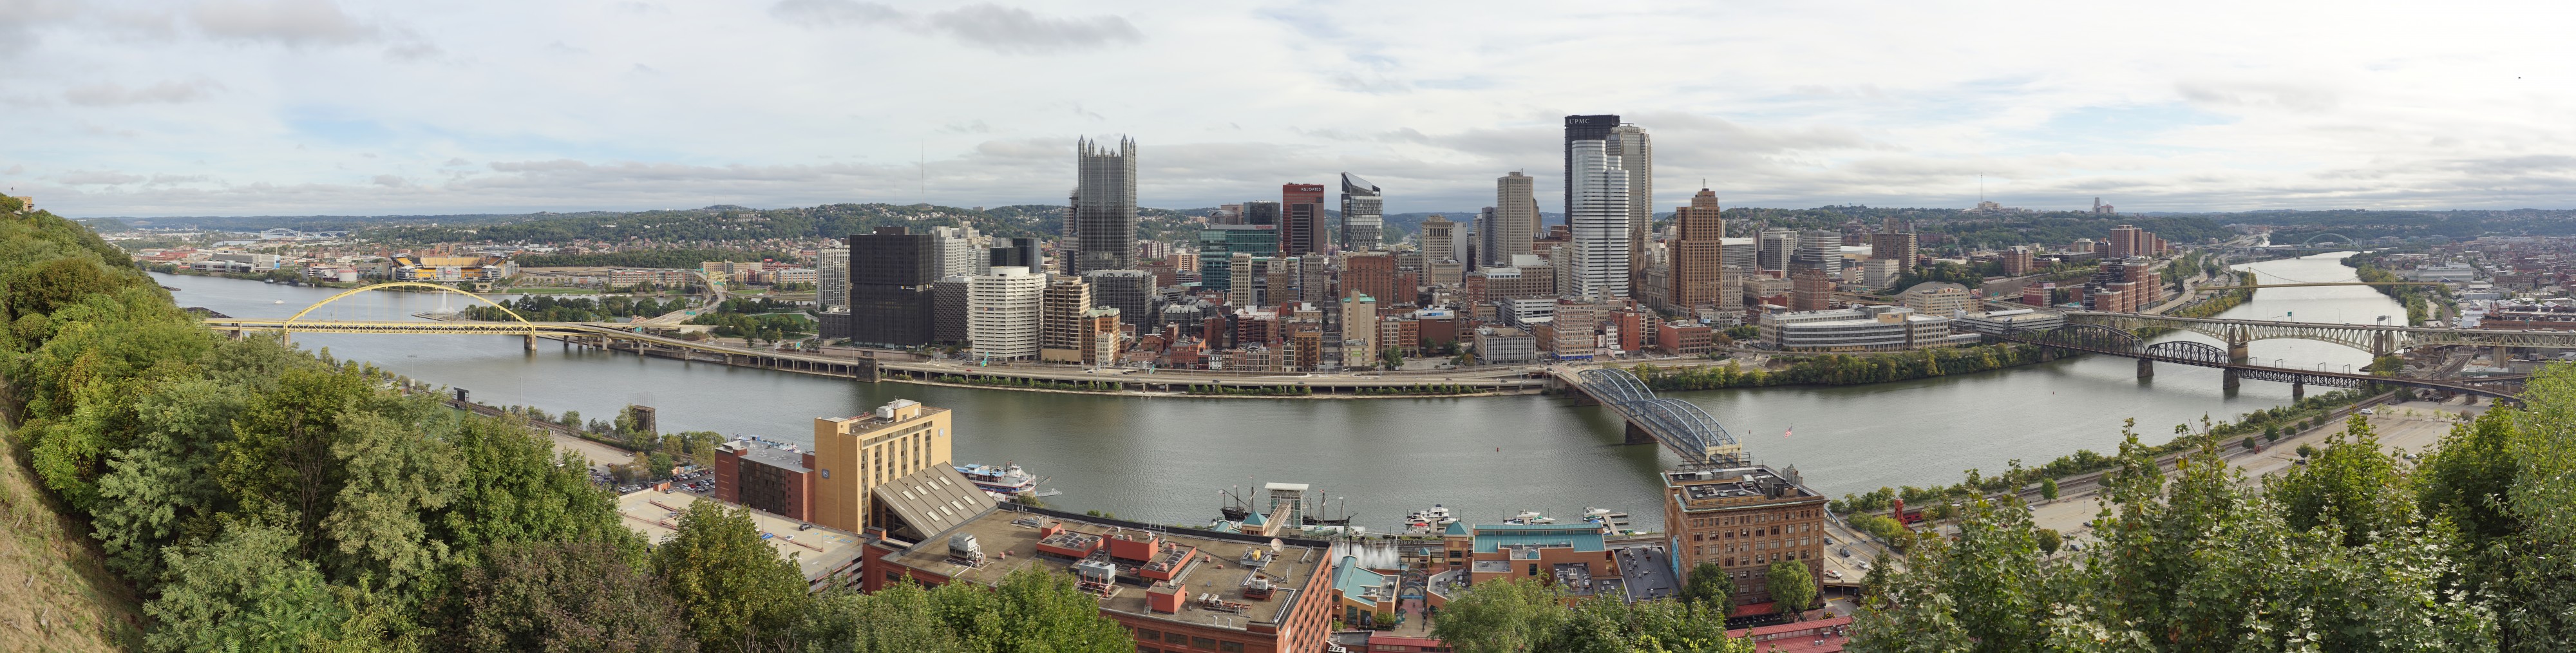 Pittsburgh city pano 2015